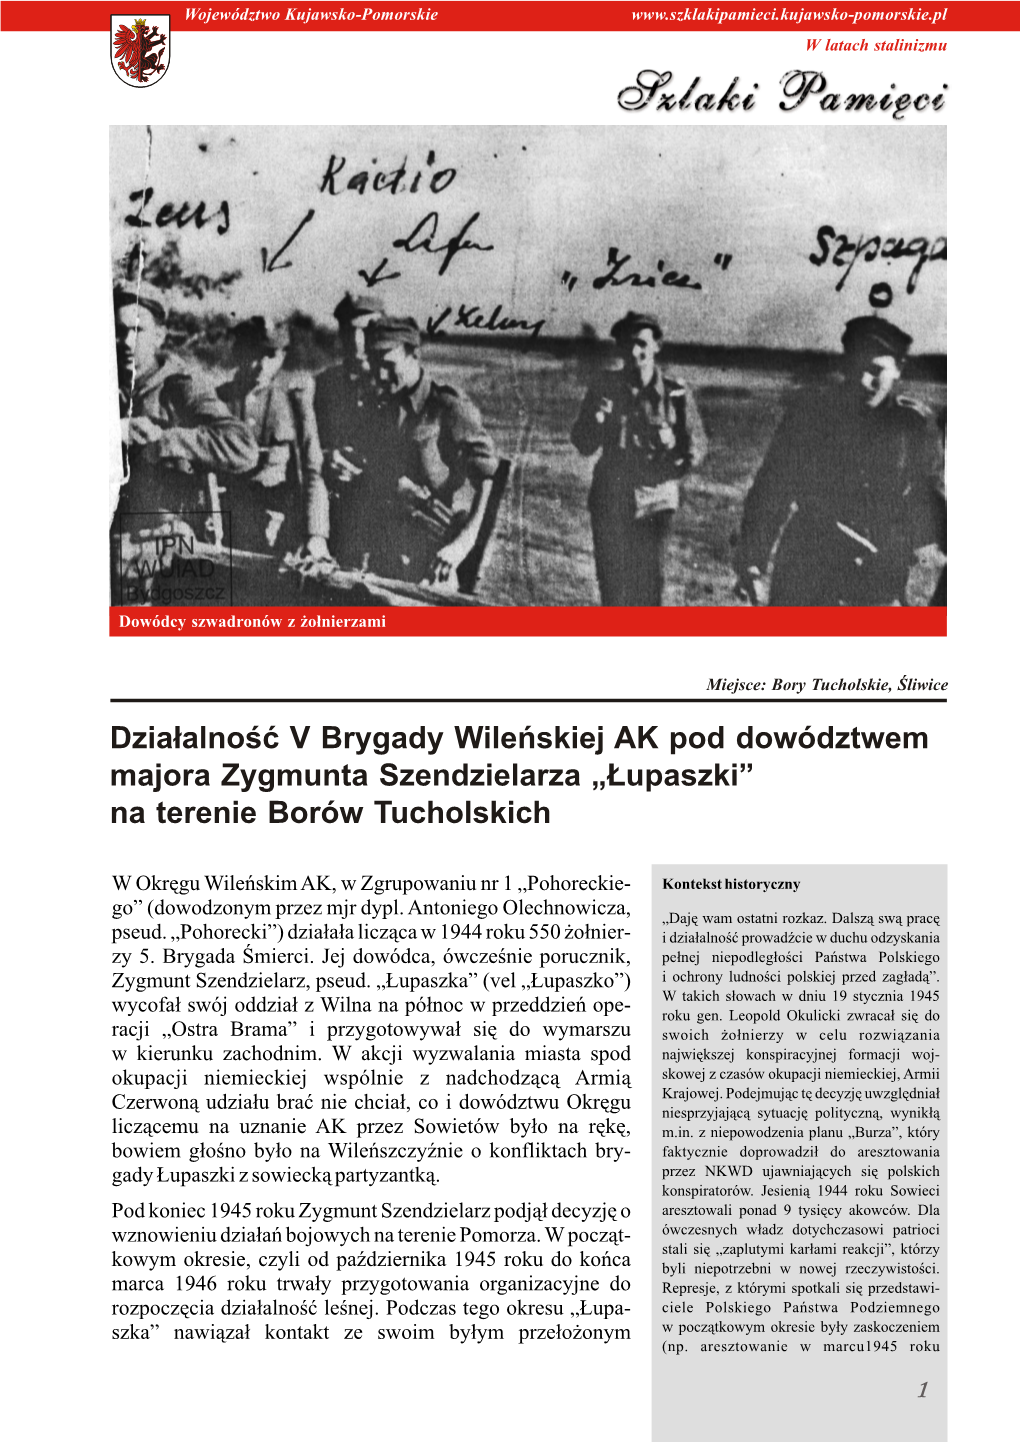 Działalność V Brygady Wileńskiej AK Pod Dowództwem Majora Zygmunta Szendzielarza „Łupaszki” Na Terenie Borów Tucholskich